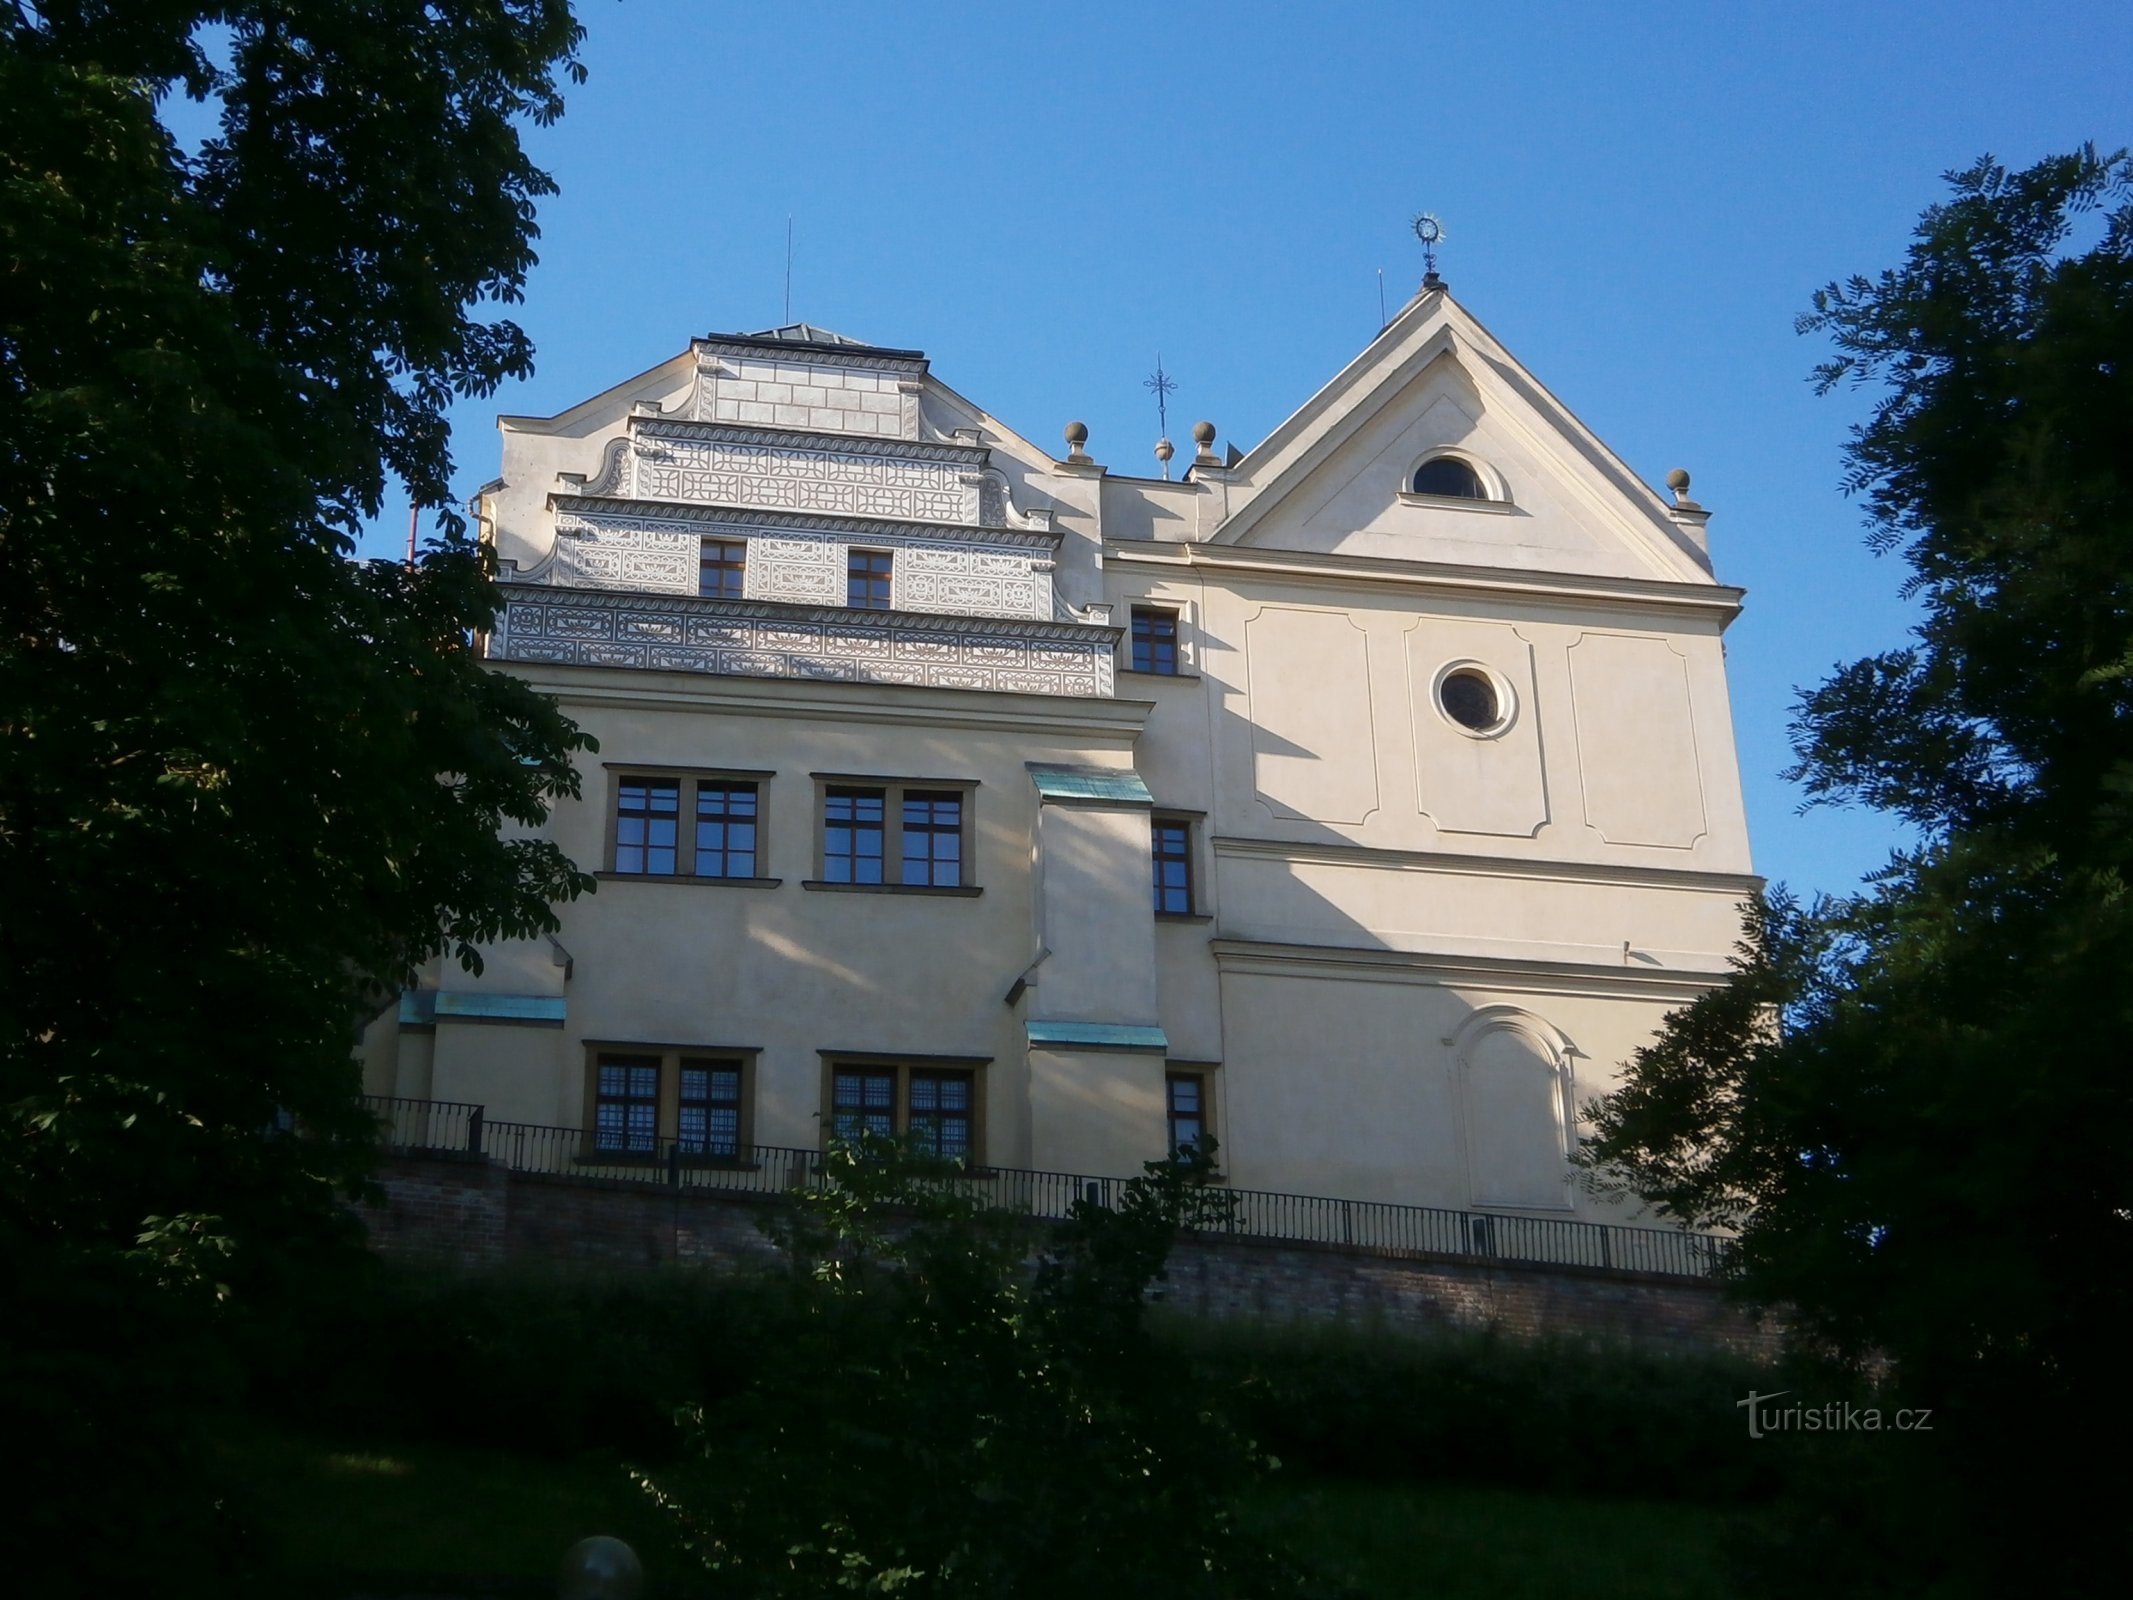 Purkrabský dům s kostelem sv. Jana Nepomuckého (Hradec Králové, 2.7.2016)